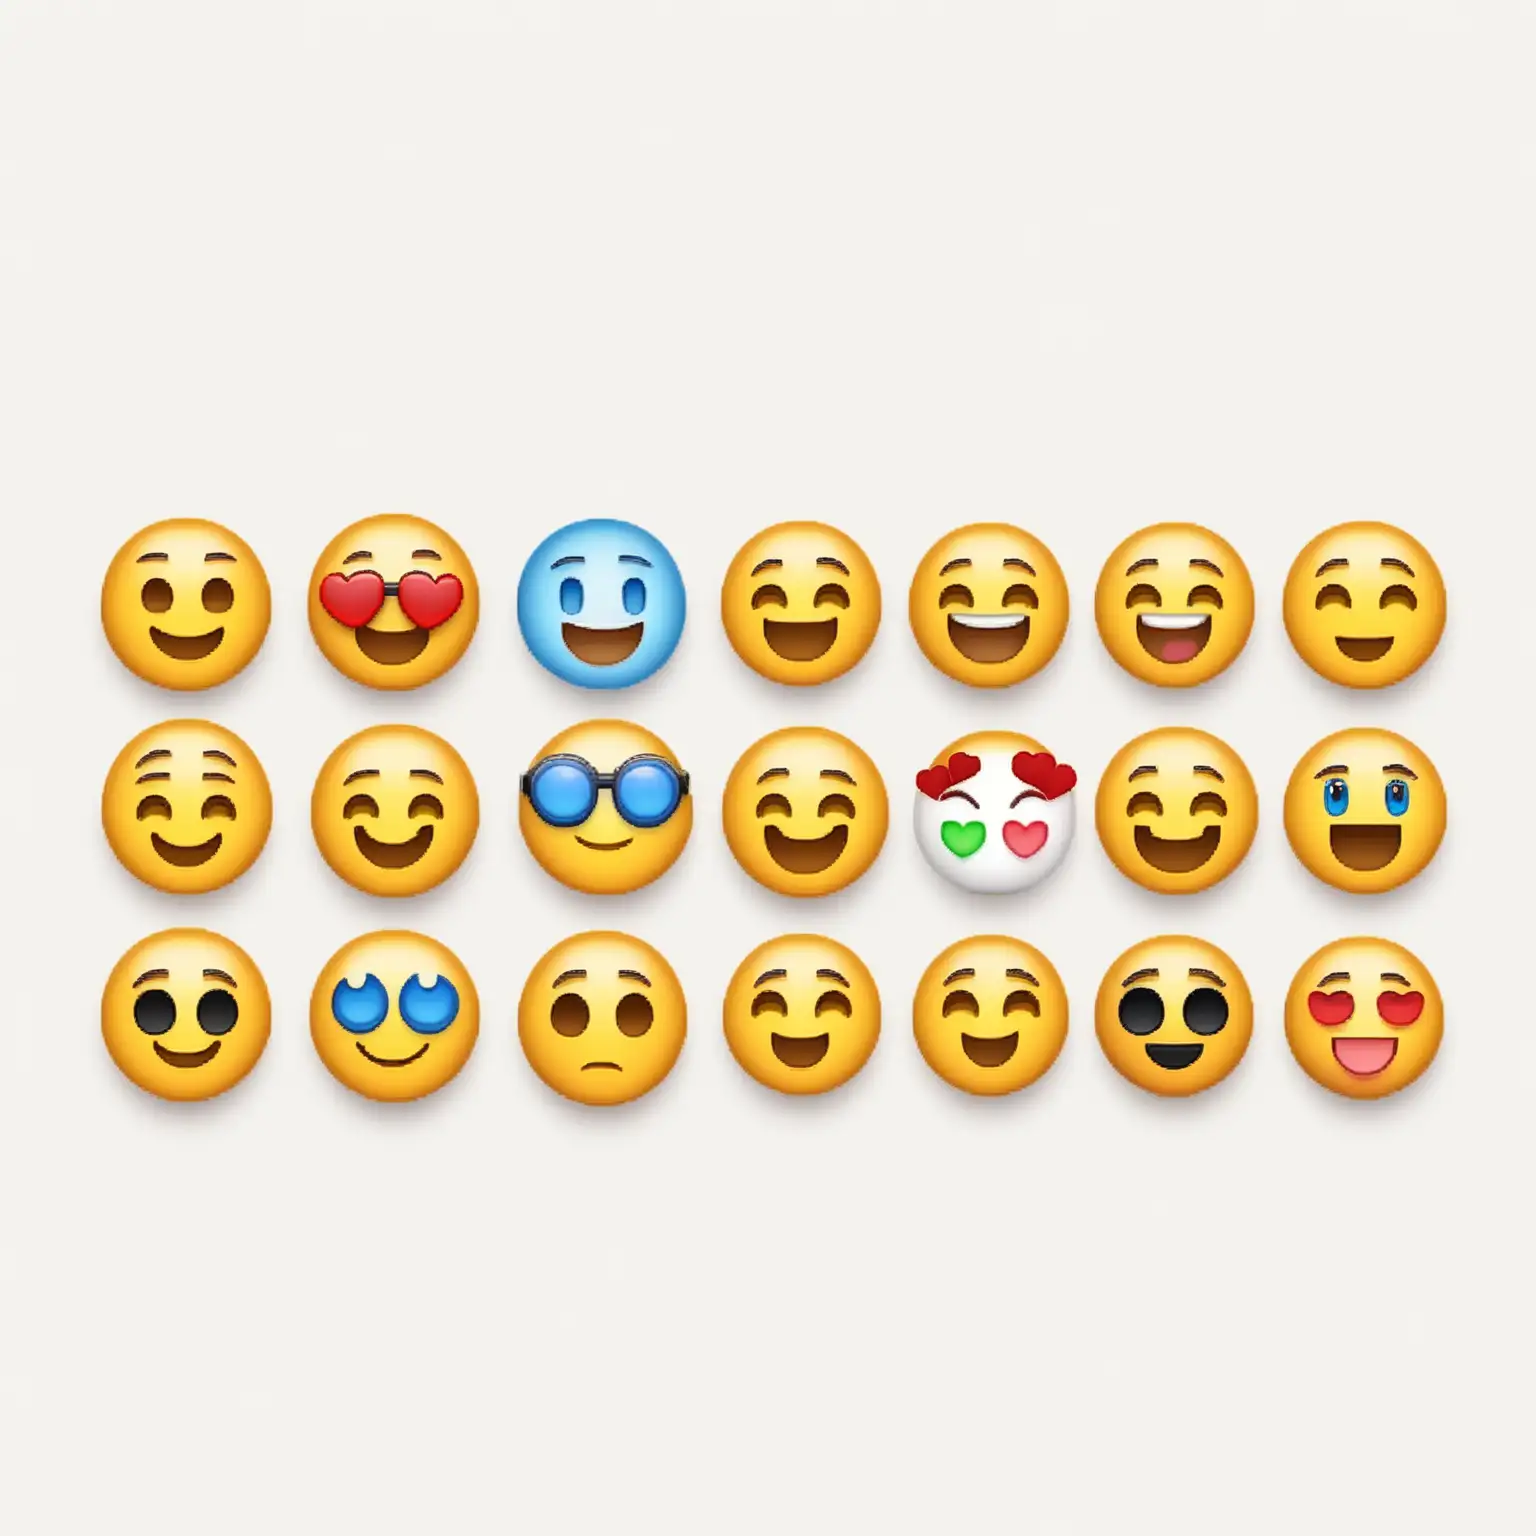 Erstelle eine Übersicht verschiedener Emojis, auf weißem Hintergrund